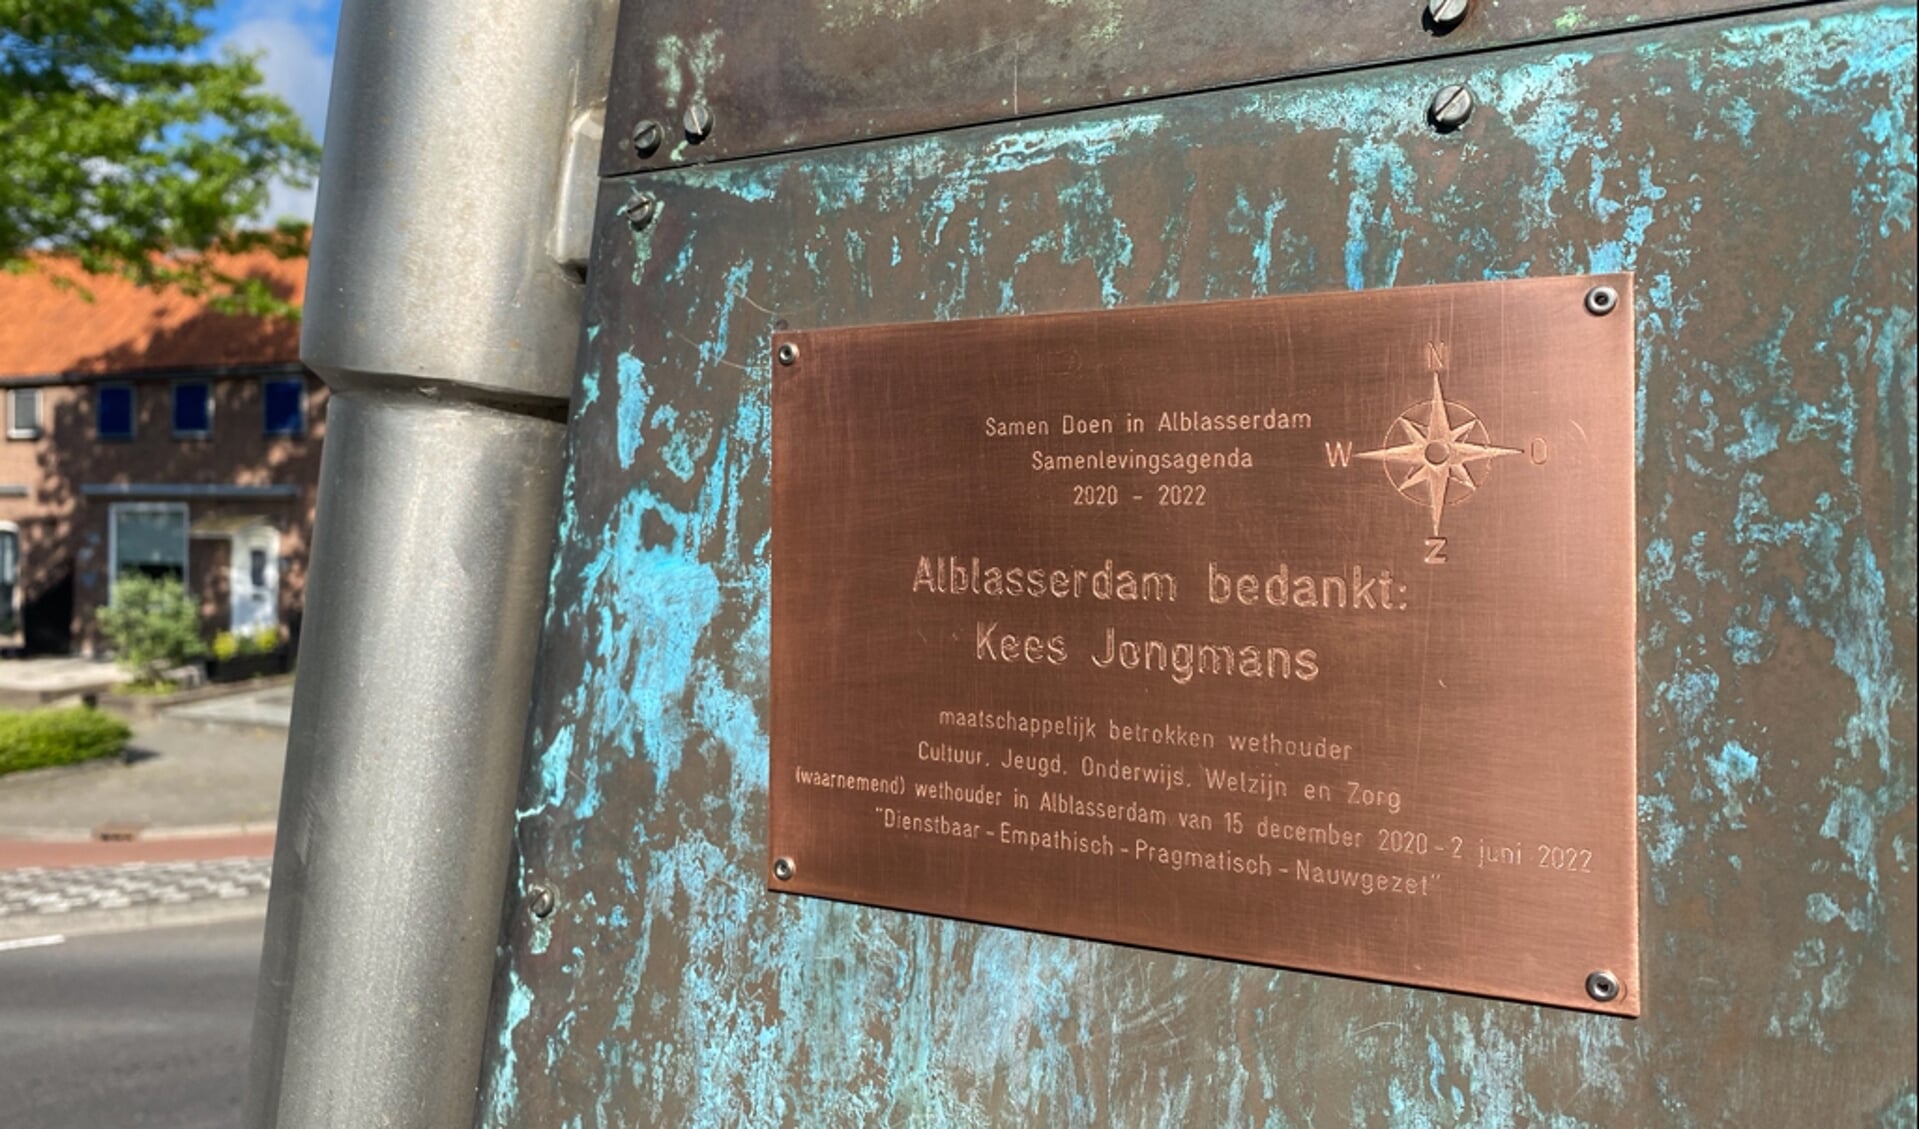 • De plaquette voor Kees Jongmans.